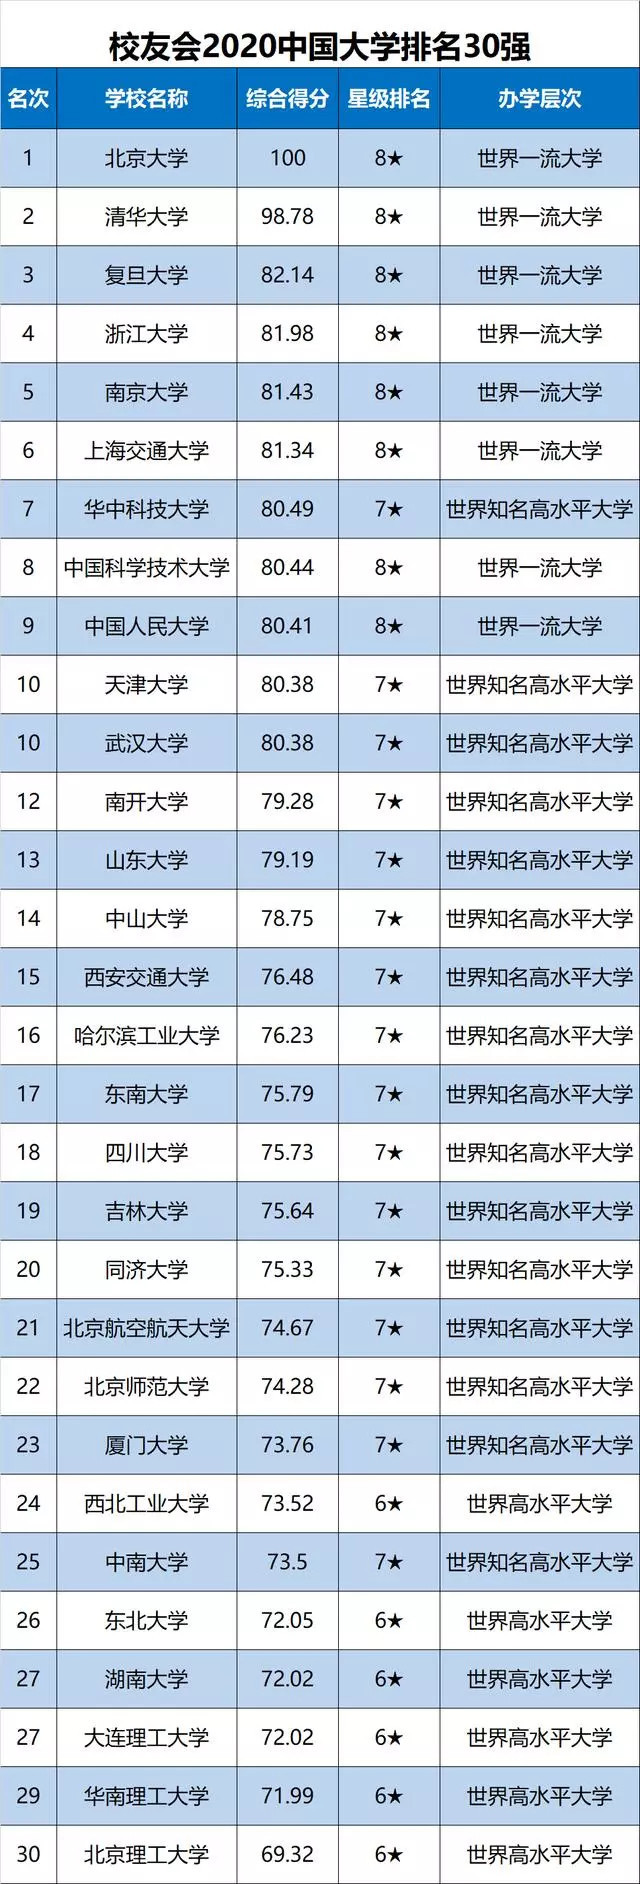 值得注意的是,华中科技大学跃居第7,创10年来最高排名.